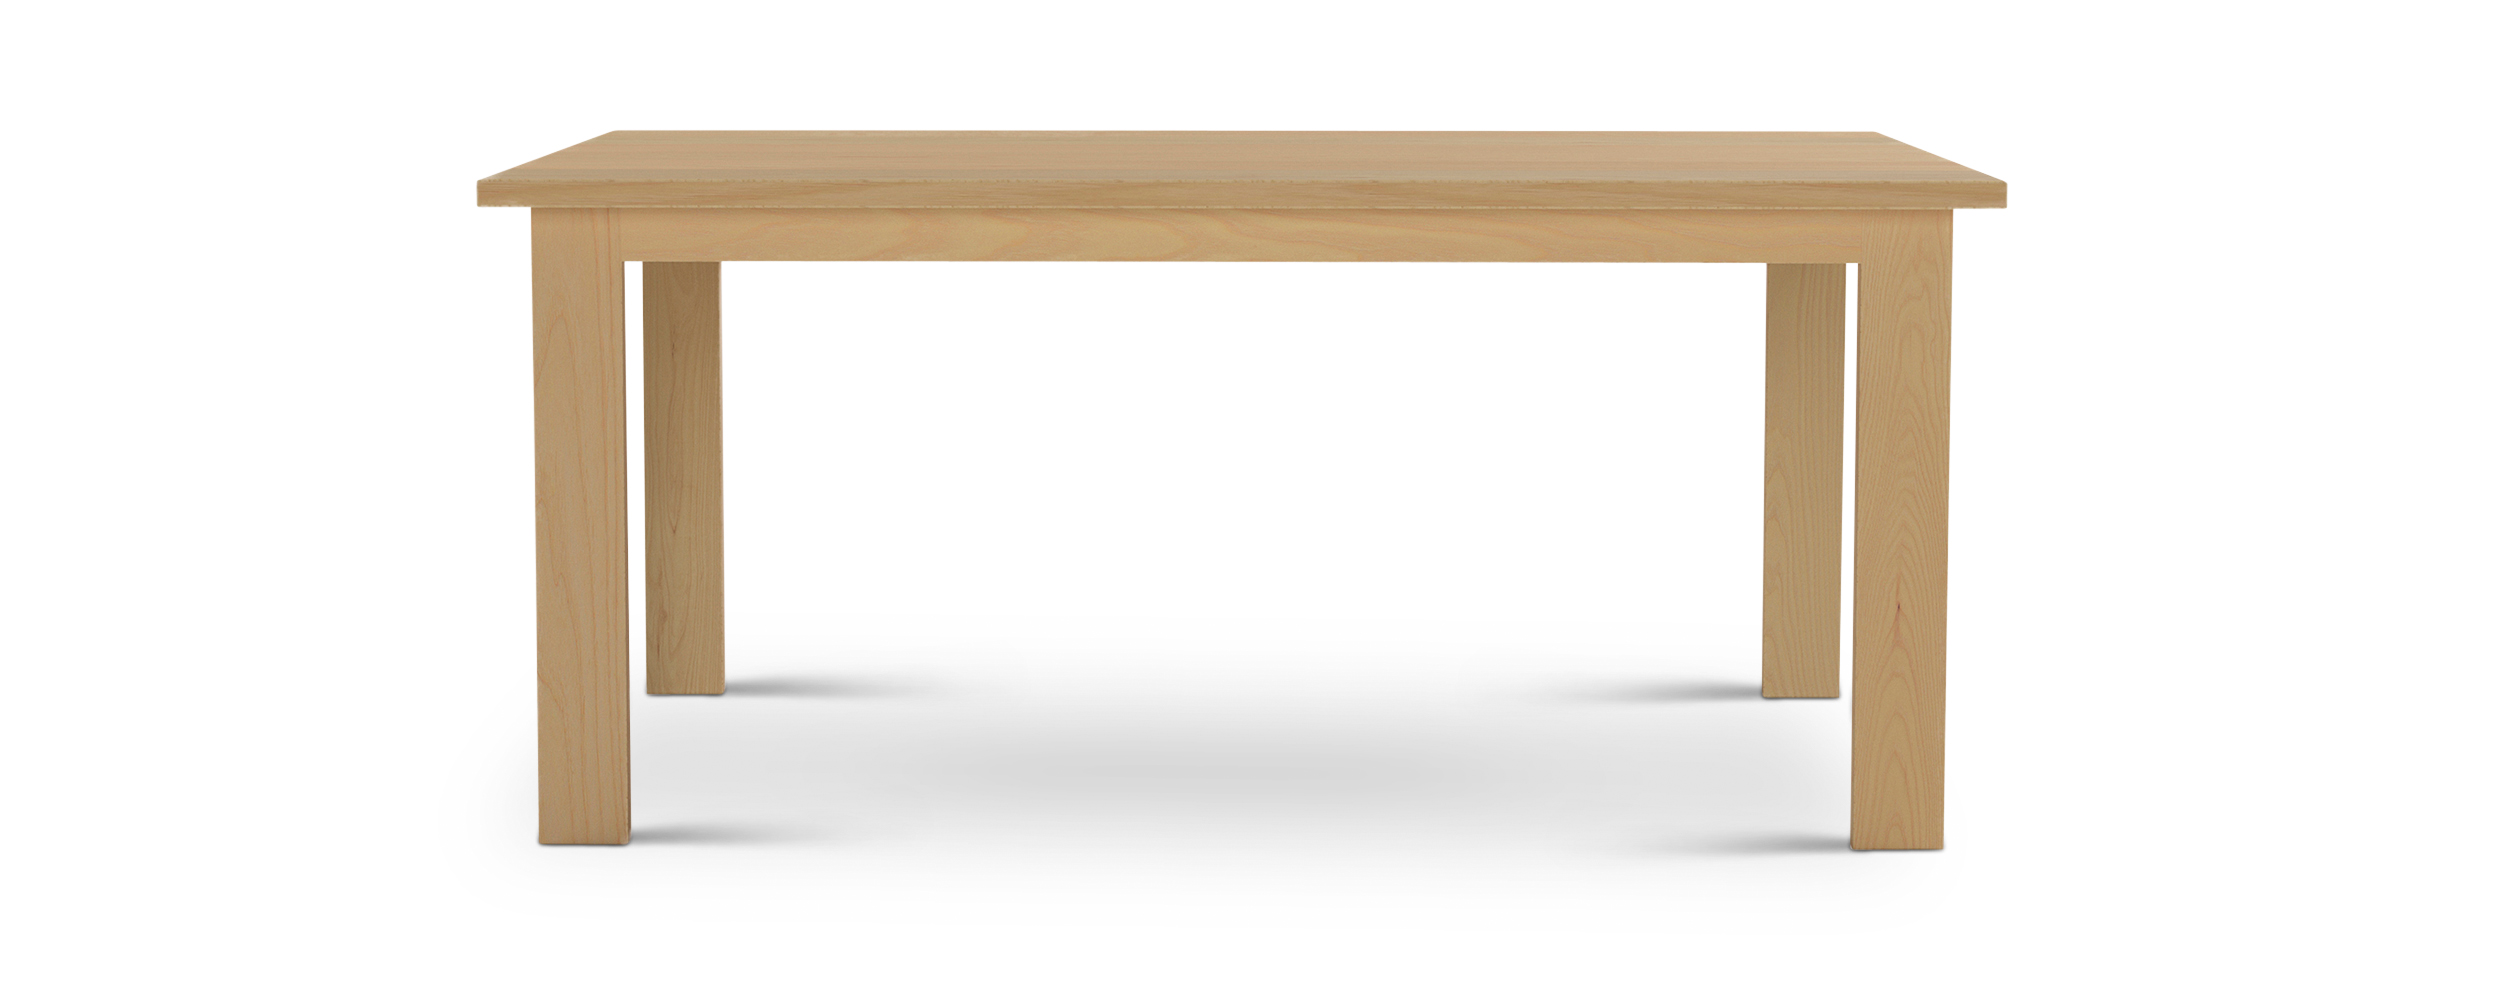 Series 424 Thin rectangular wooden legs modern table 66" long